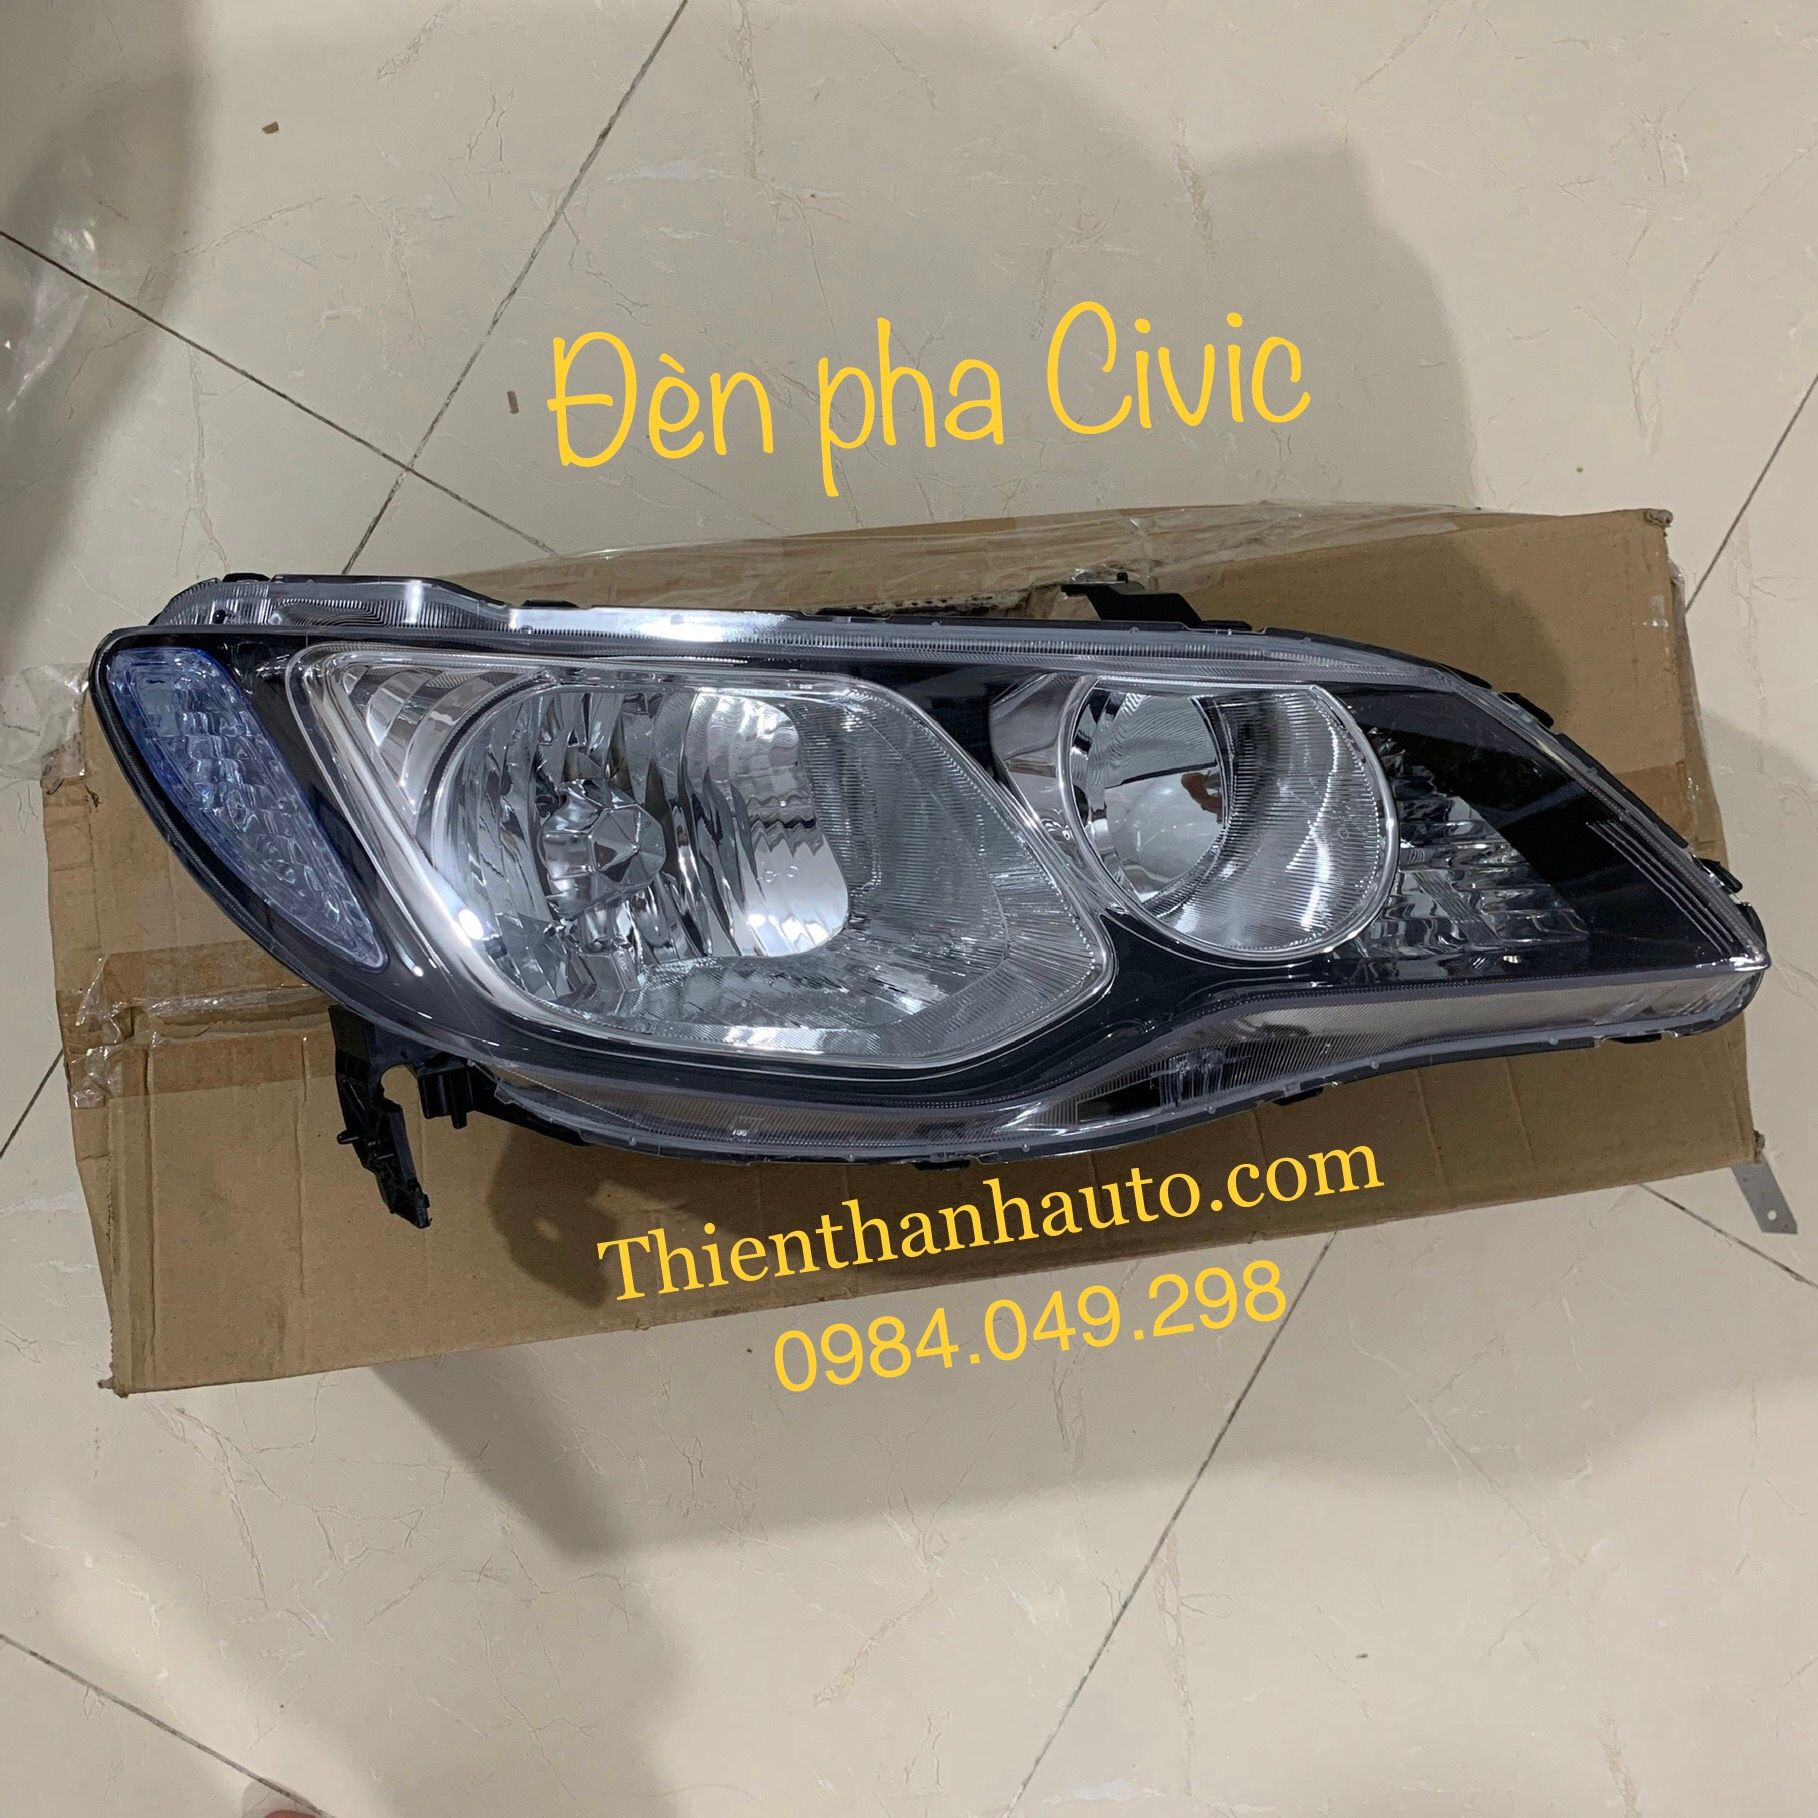 Đèn pha phải Honda Civic 1.8 giá tốt nhất - Thienthanhauto.com